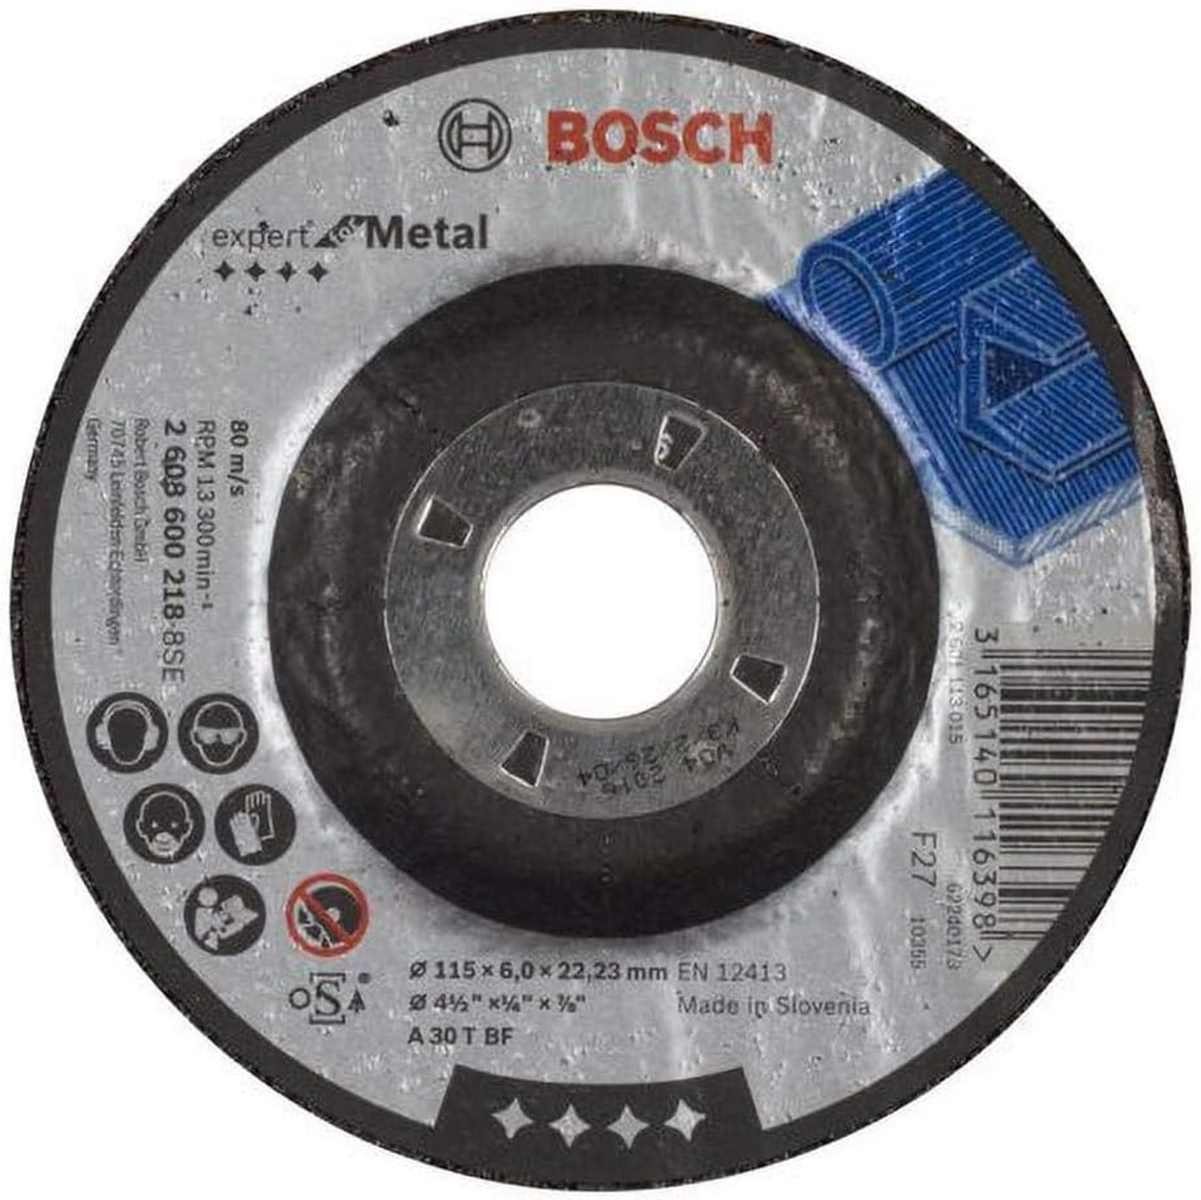 BOSCH Bohrfutter Bosch Schruppscheibe A 30 T BF 115 mm 6 mm gekröpft Expert for Metal